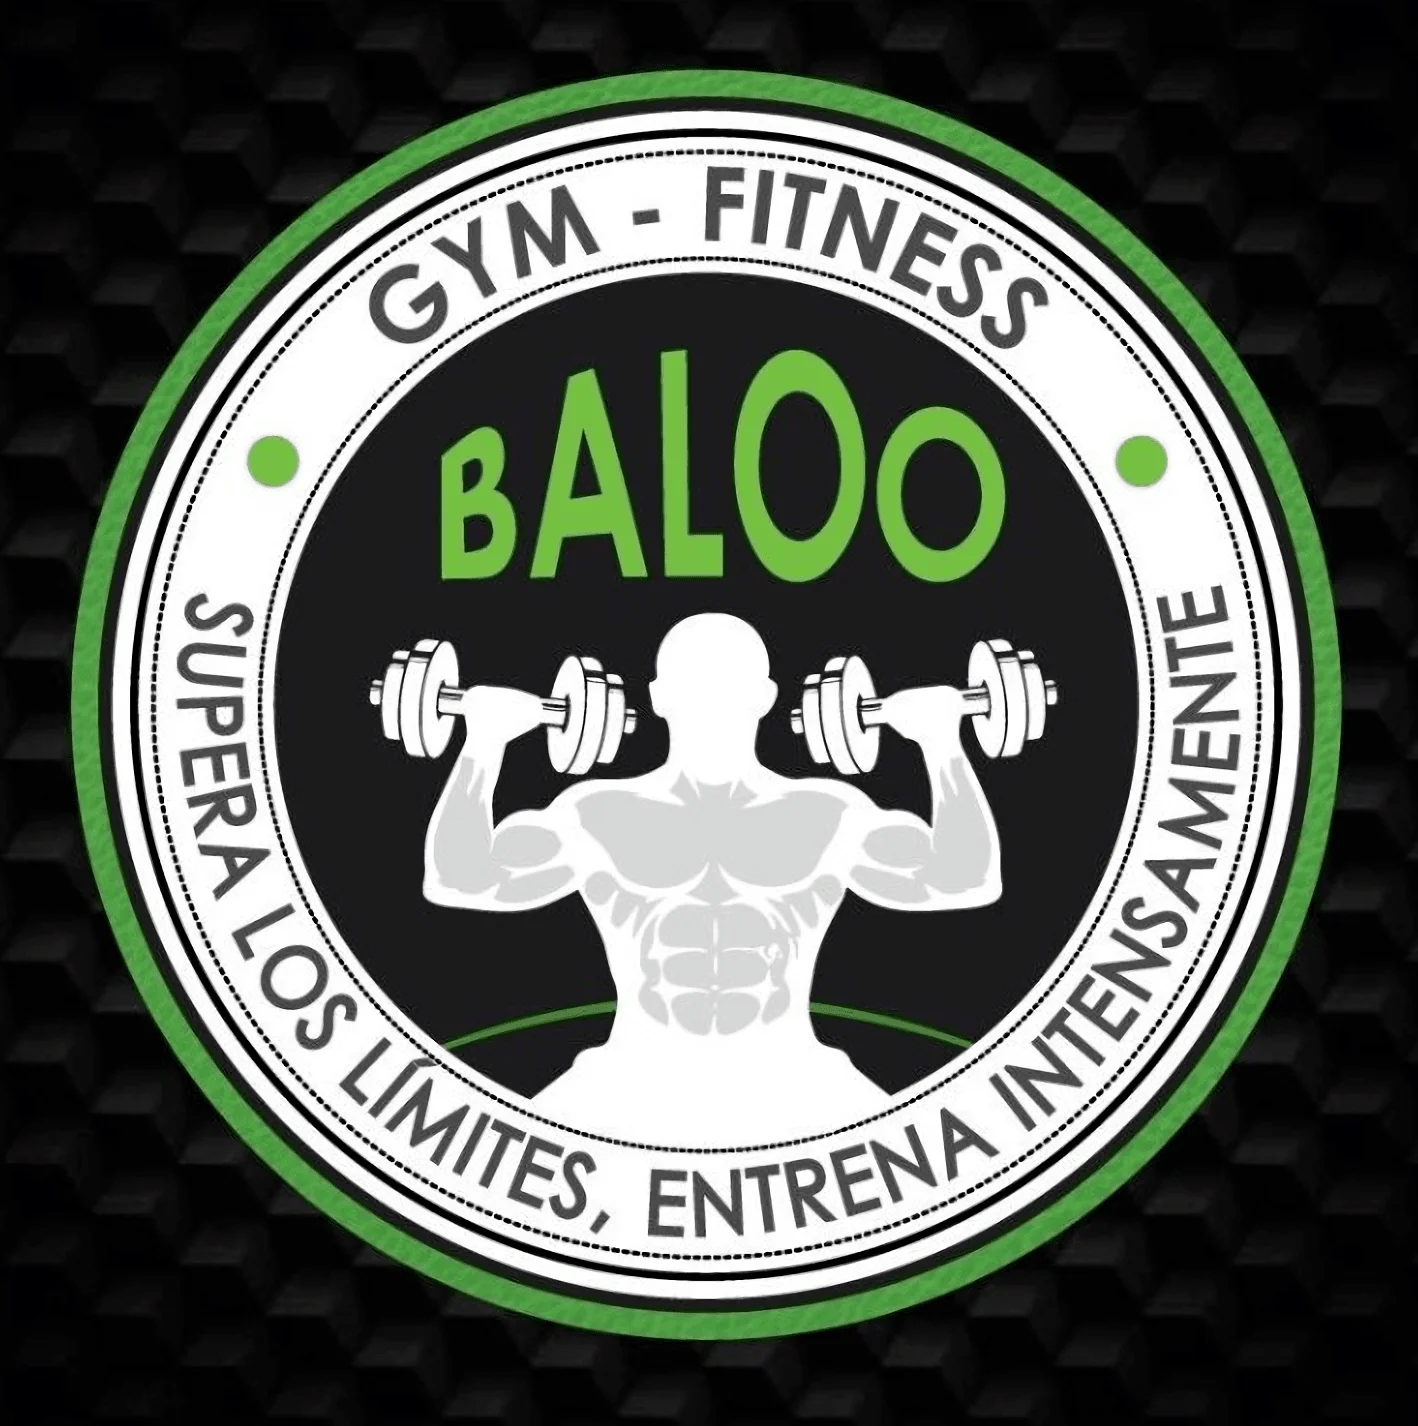 Gimnasio-baloo-gym-9007